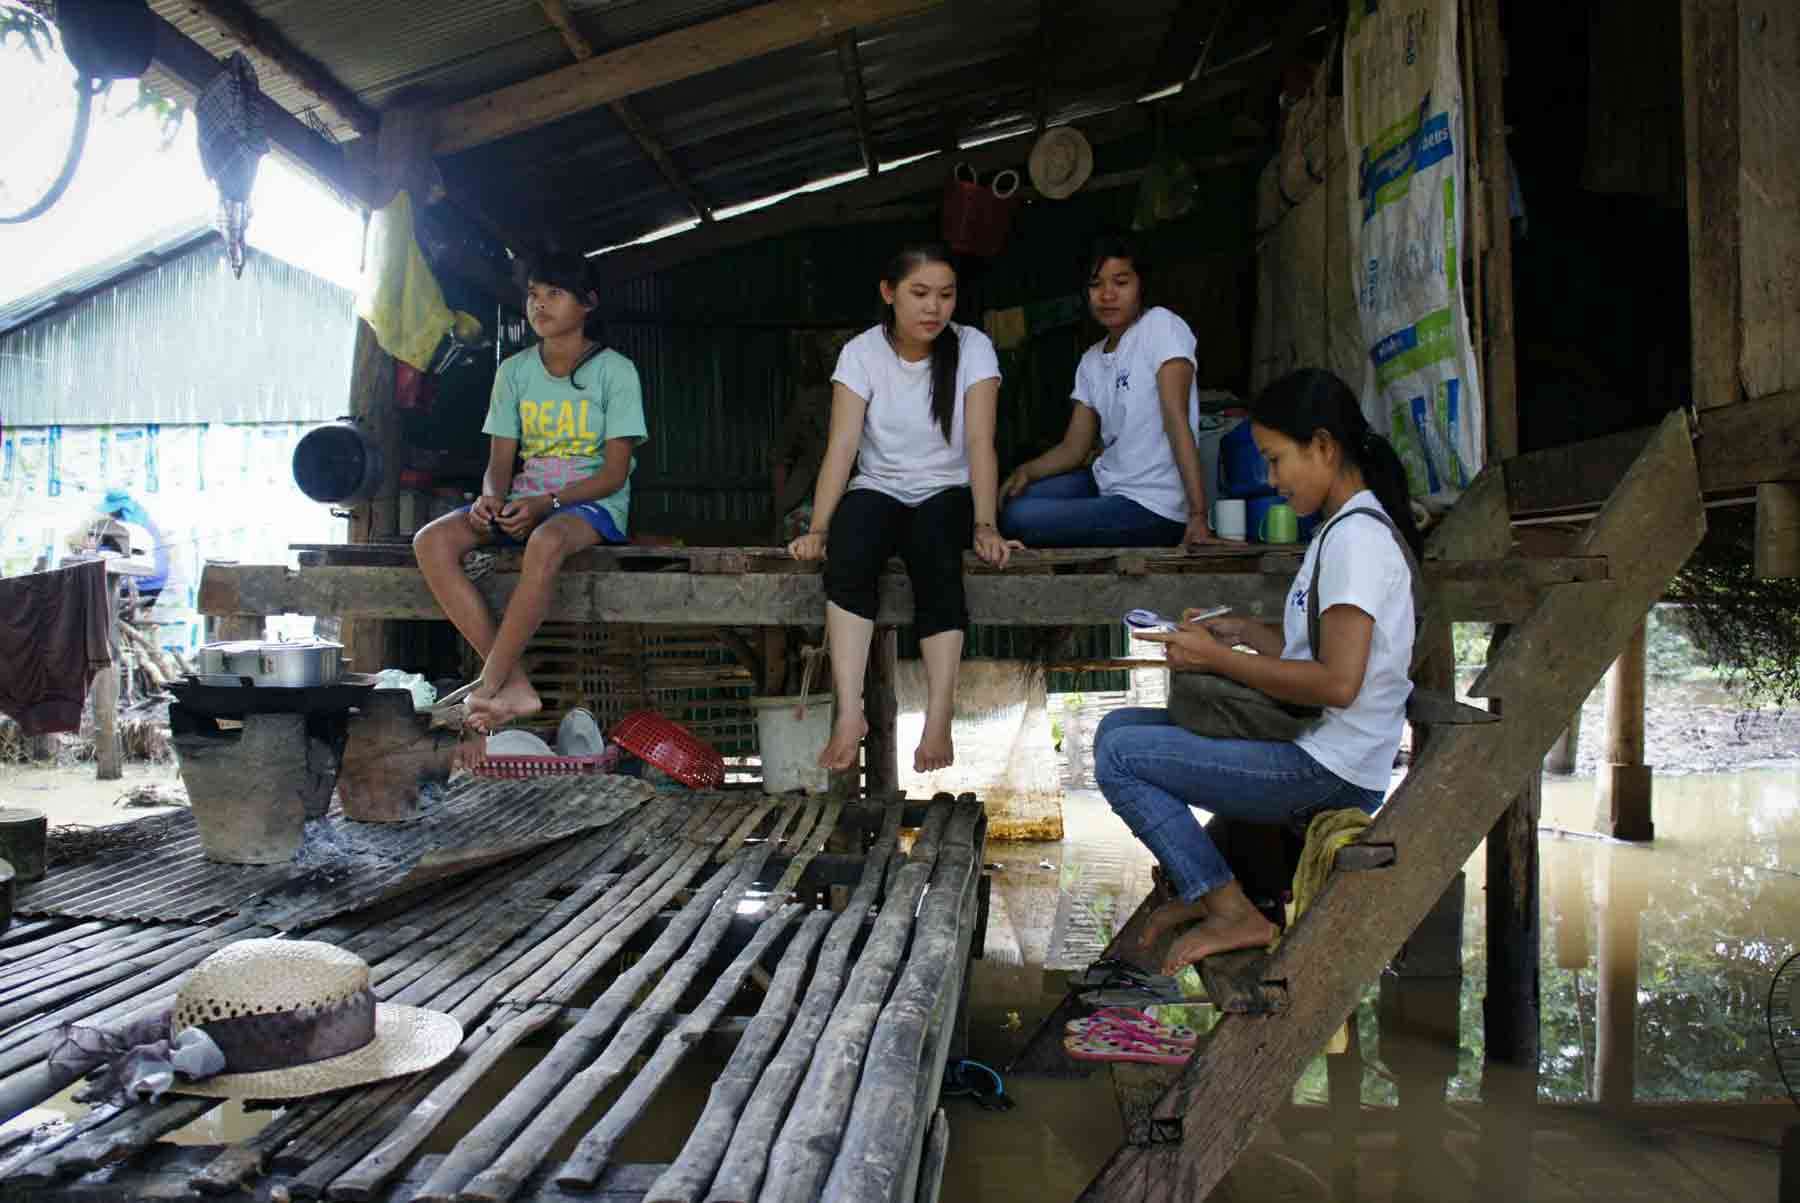 Nos volontaires interviennent dans un village au Cambodge, pour venir en aide à un enfant en situation de maltraitance grave